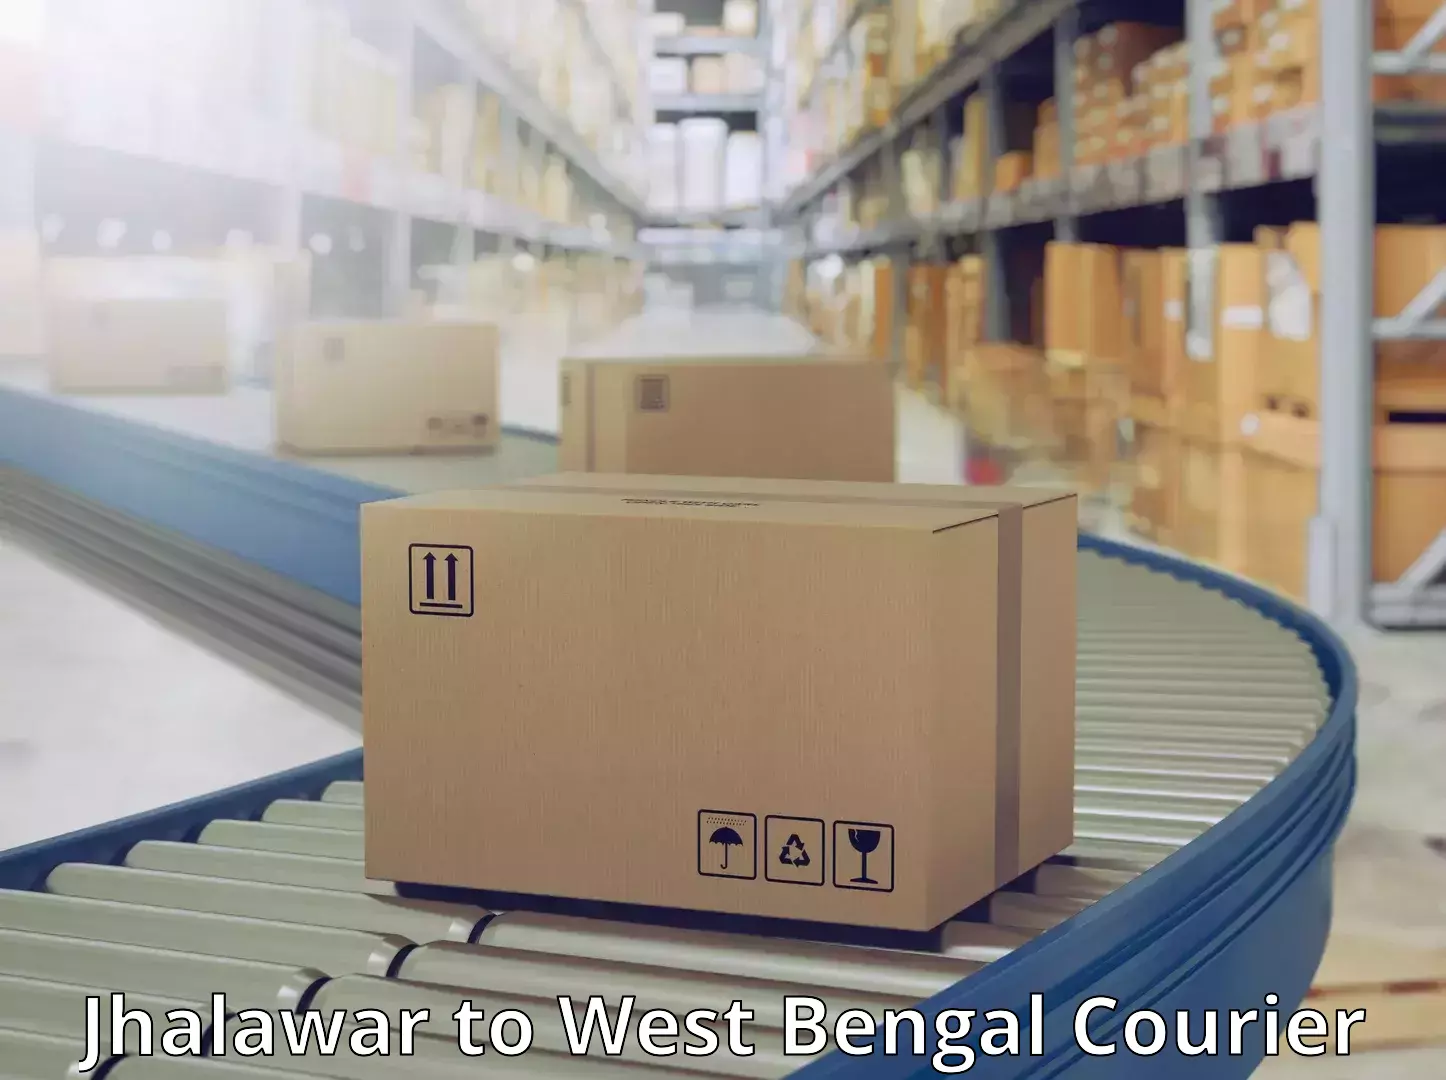 Global courier networks Jhalawar to Kolkata Port